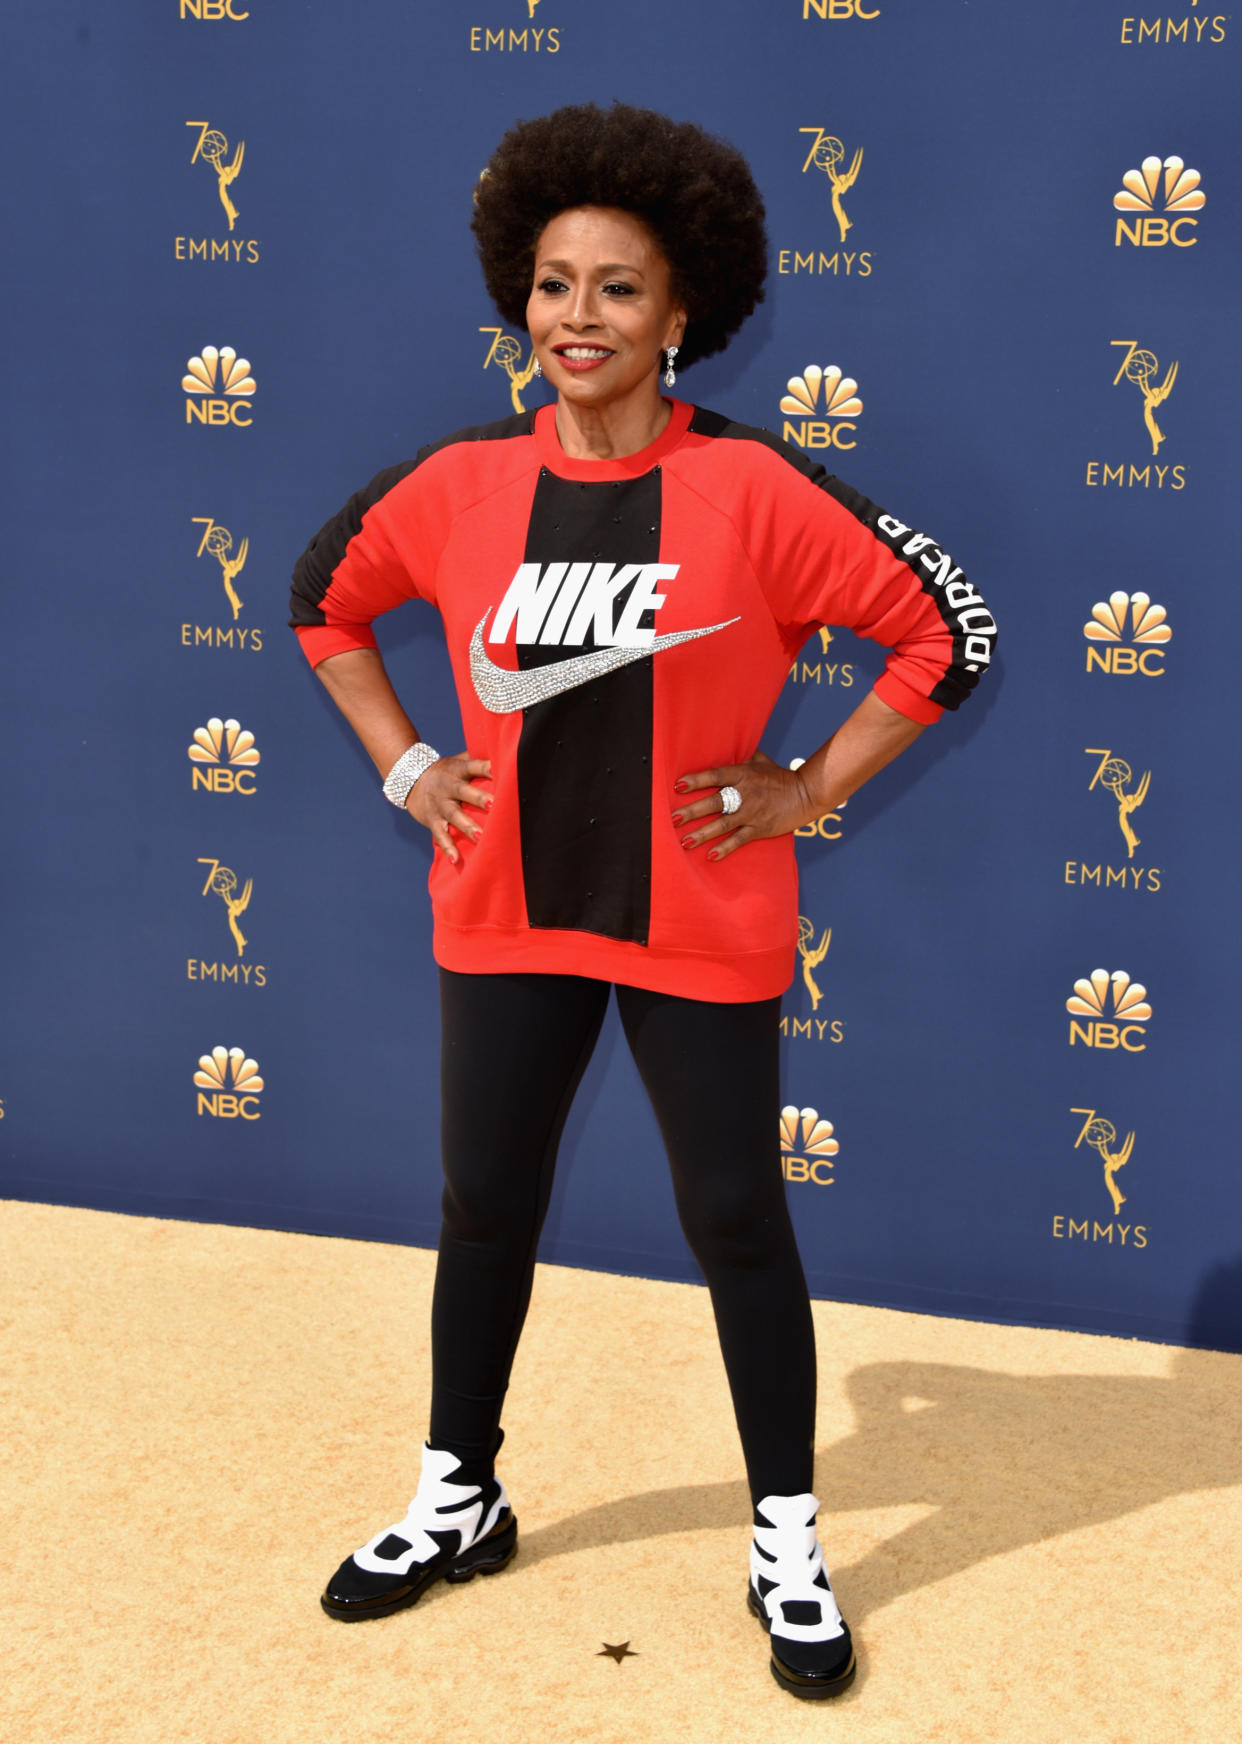 Ihr sportliches Outfit auf den Emmy Awards hatte für Jenifer Lewis eine wichtige Botschaft. (Bild: Getty Images)